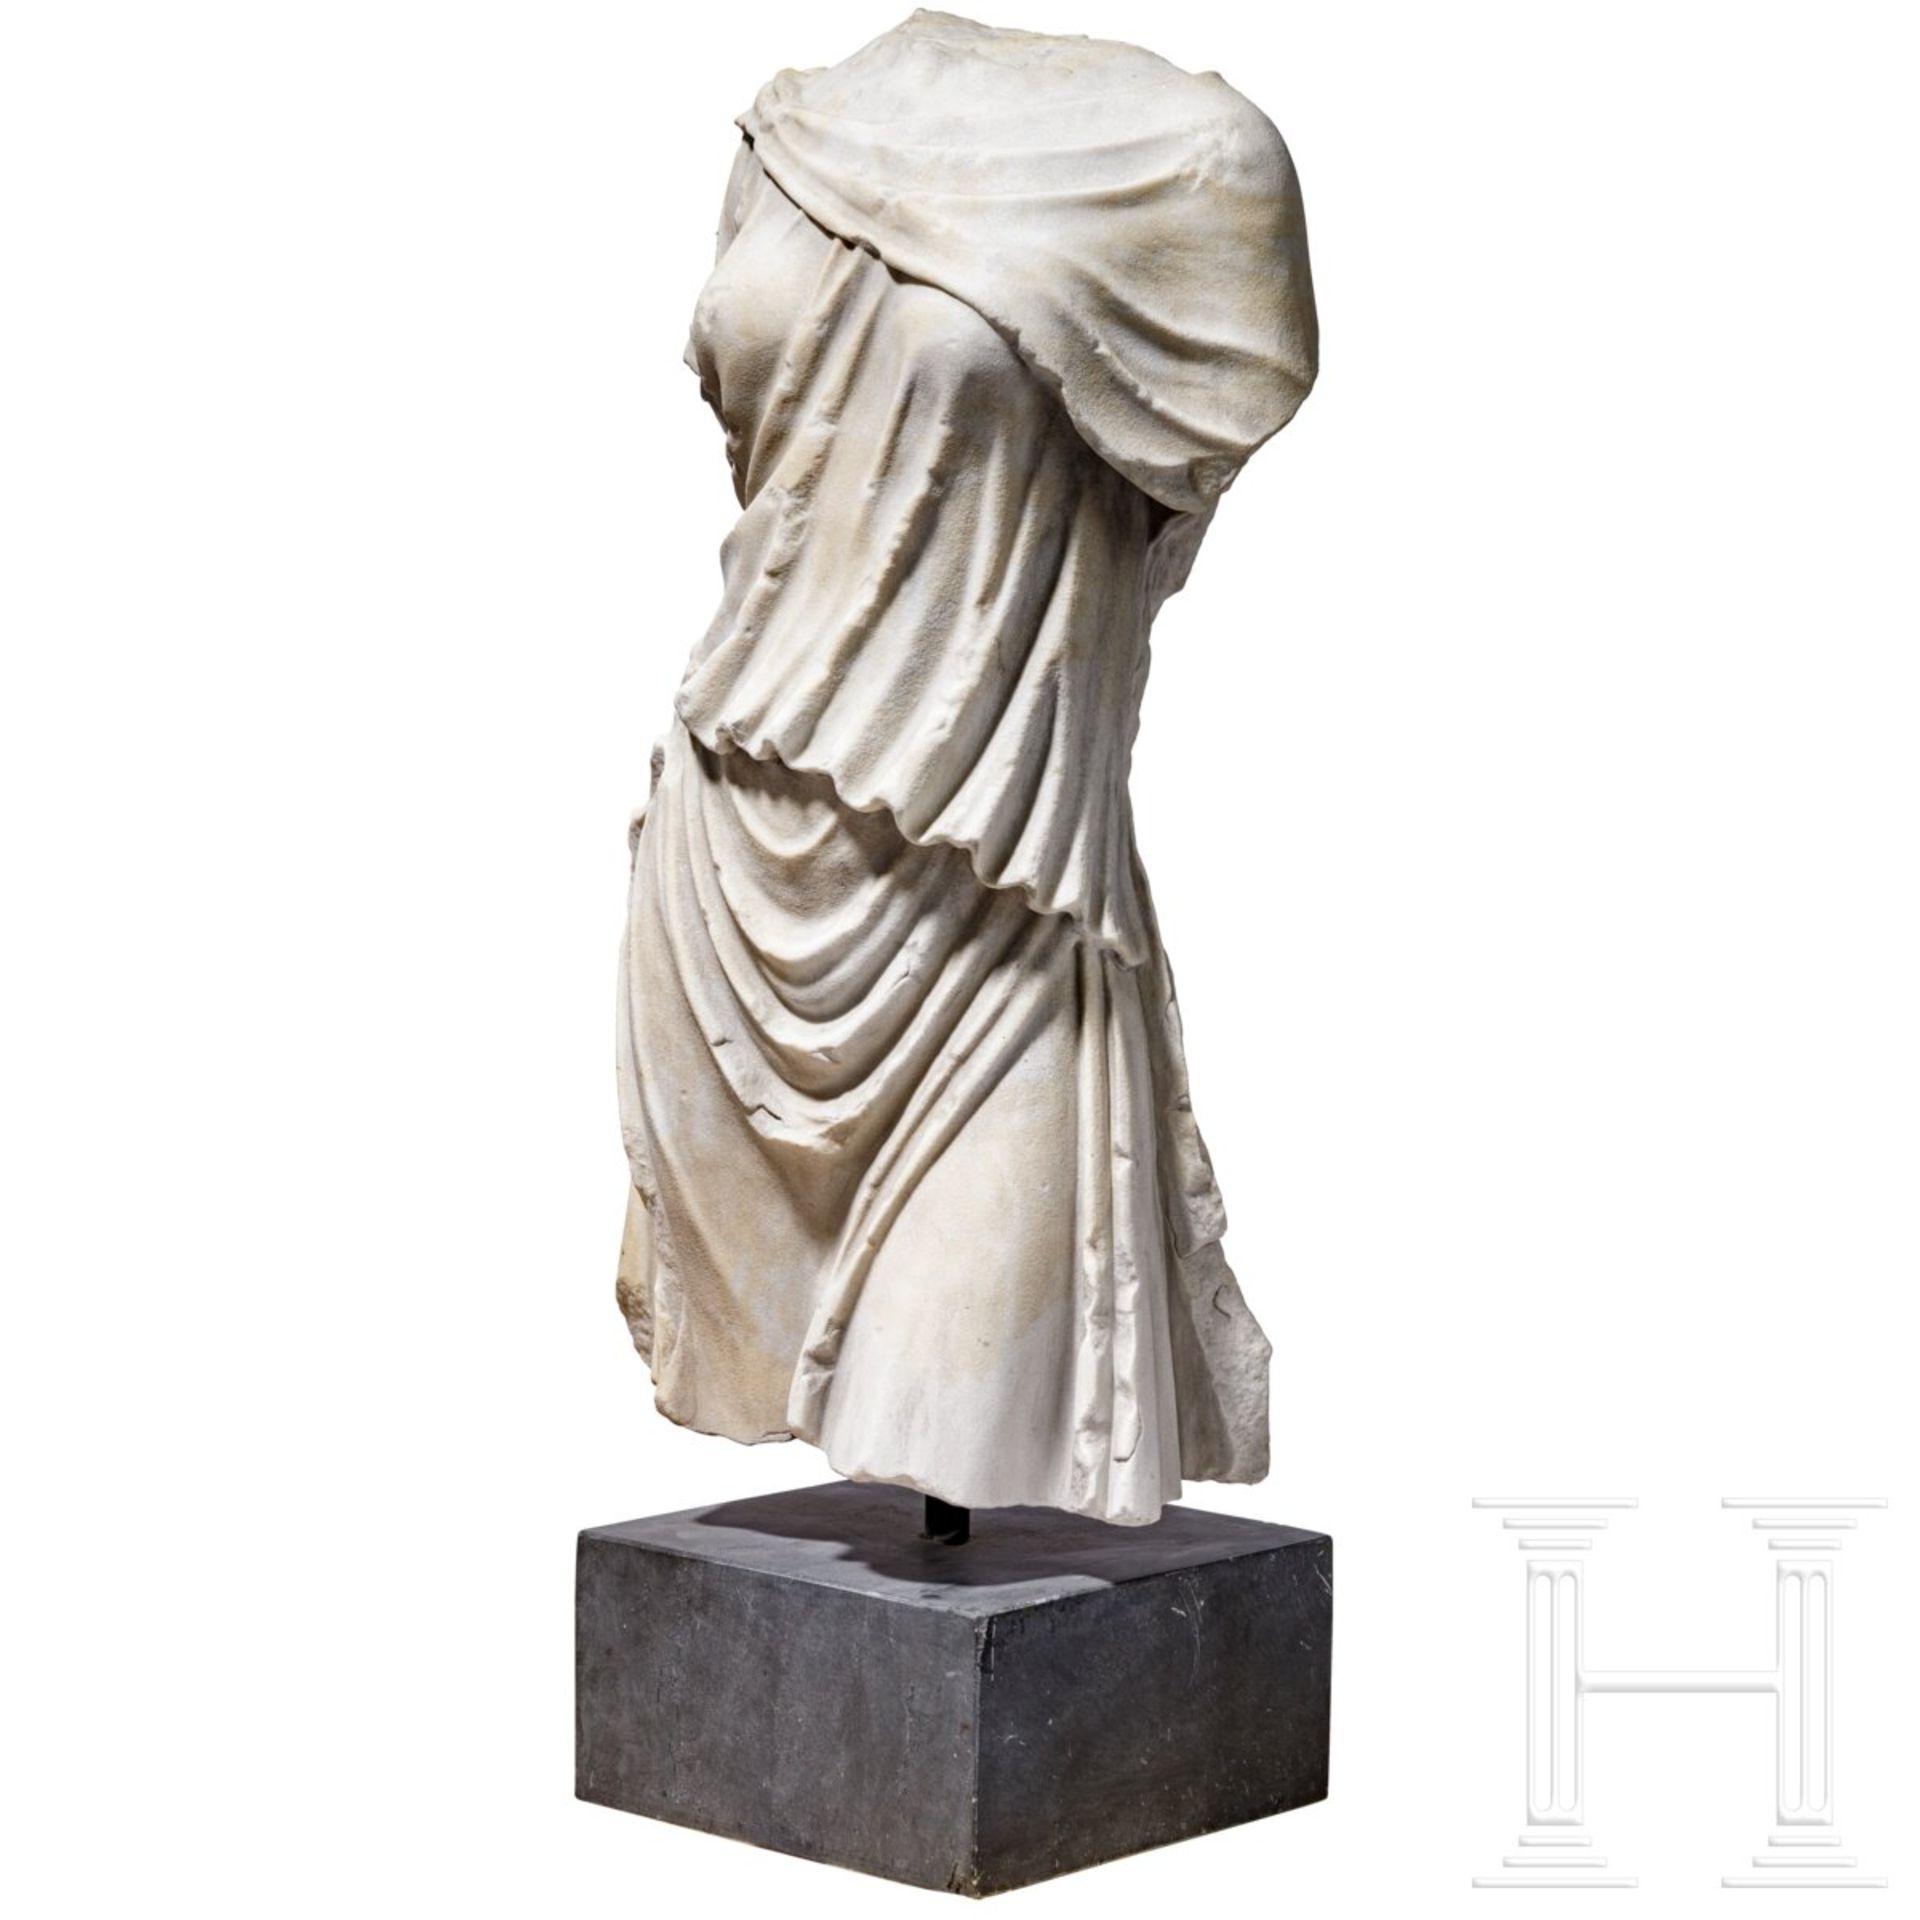 Klassizistischer Marmortorso nach dem Vorbild einer antiken Artemis-Statue, um 1800 - frühes 19. Jhd - Bild 3 aus 7